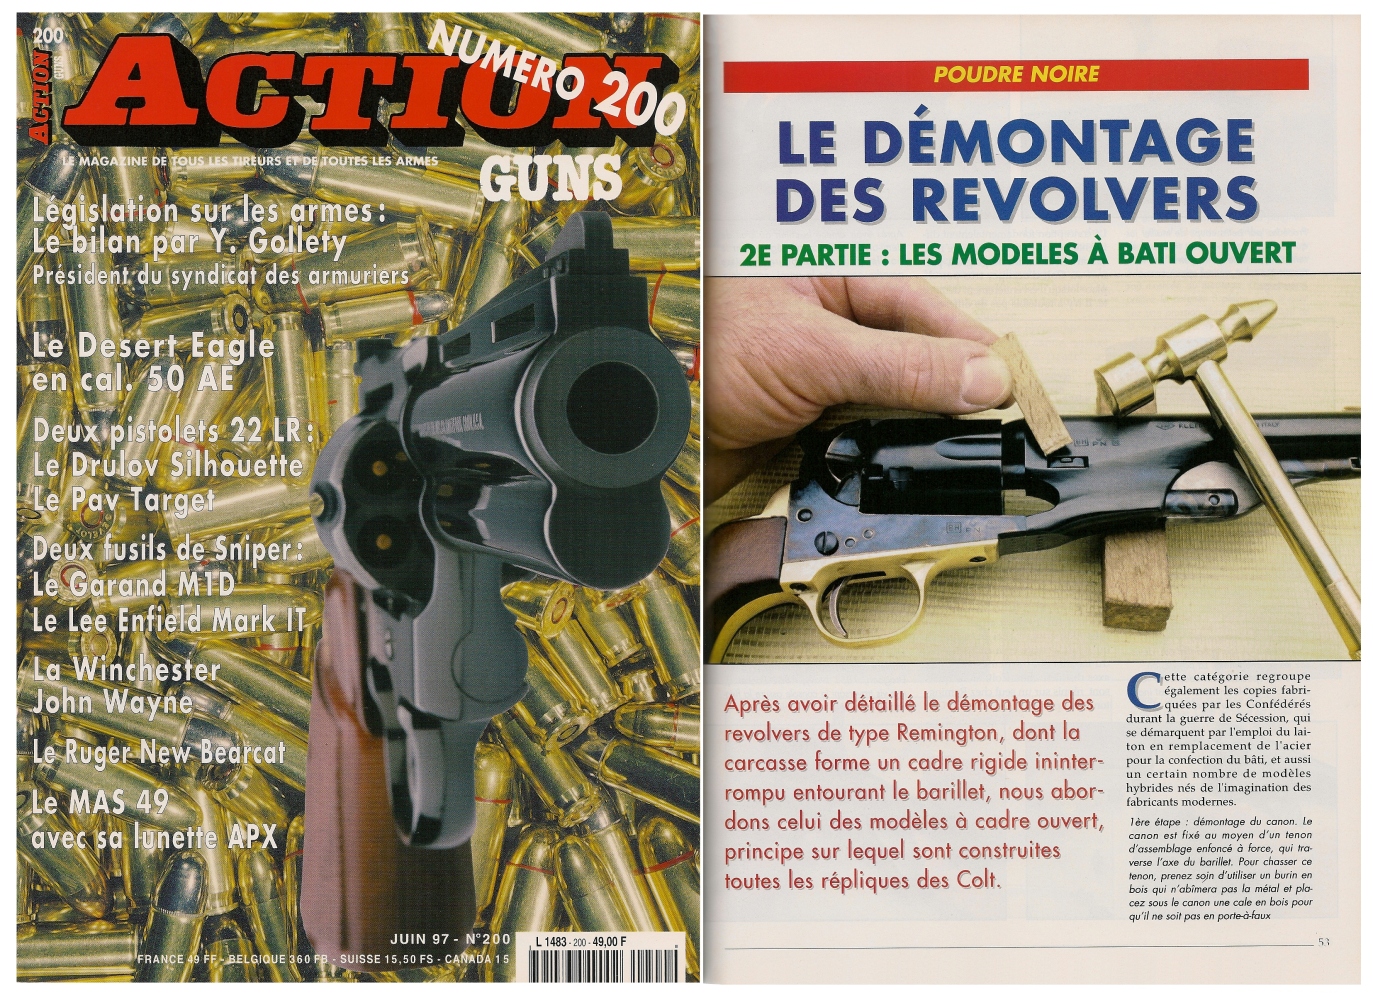 La seconde partie de cet article, consacrée aux revolvers à bâti ouvert, a été publiée sur 5 pages dans le magazine Action Guns n° 200 (juin 1997). 